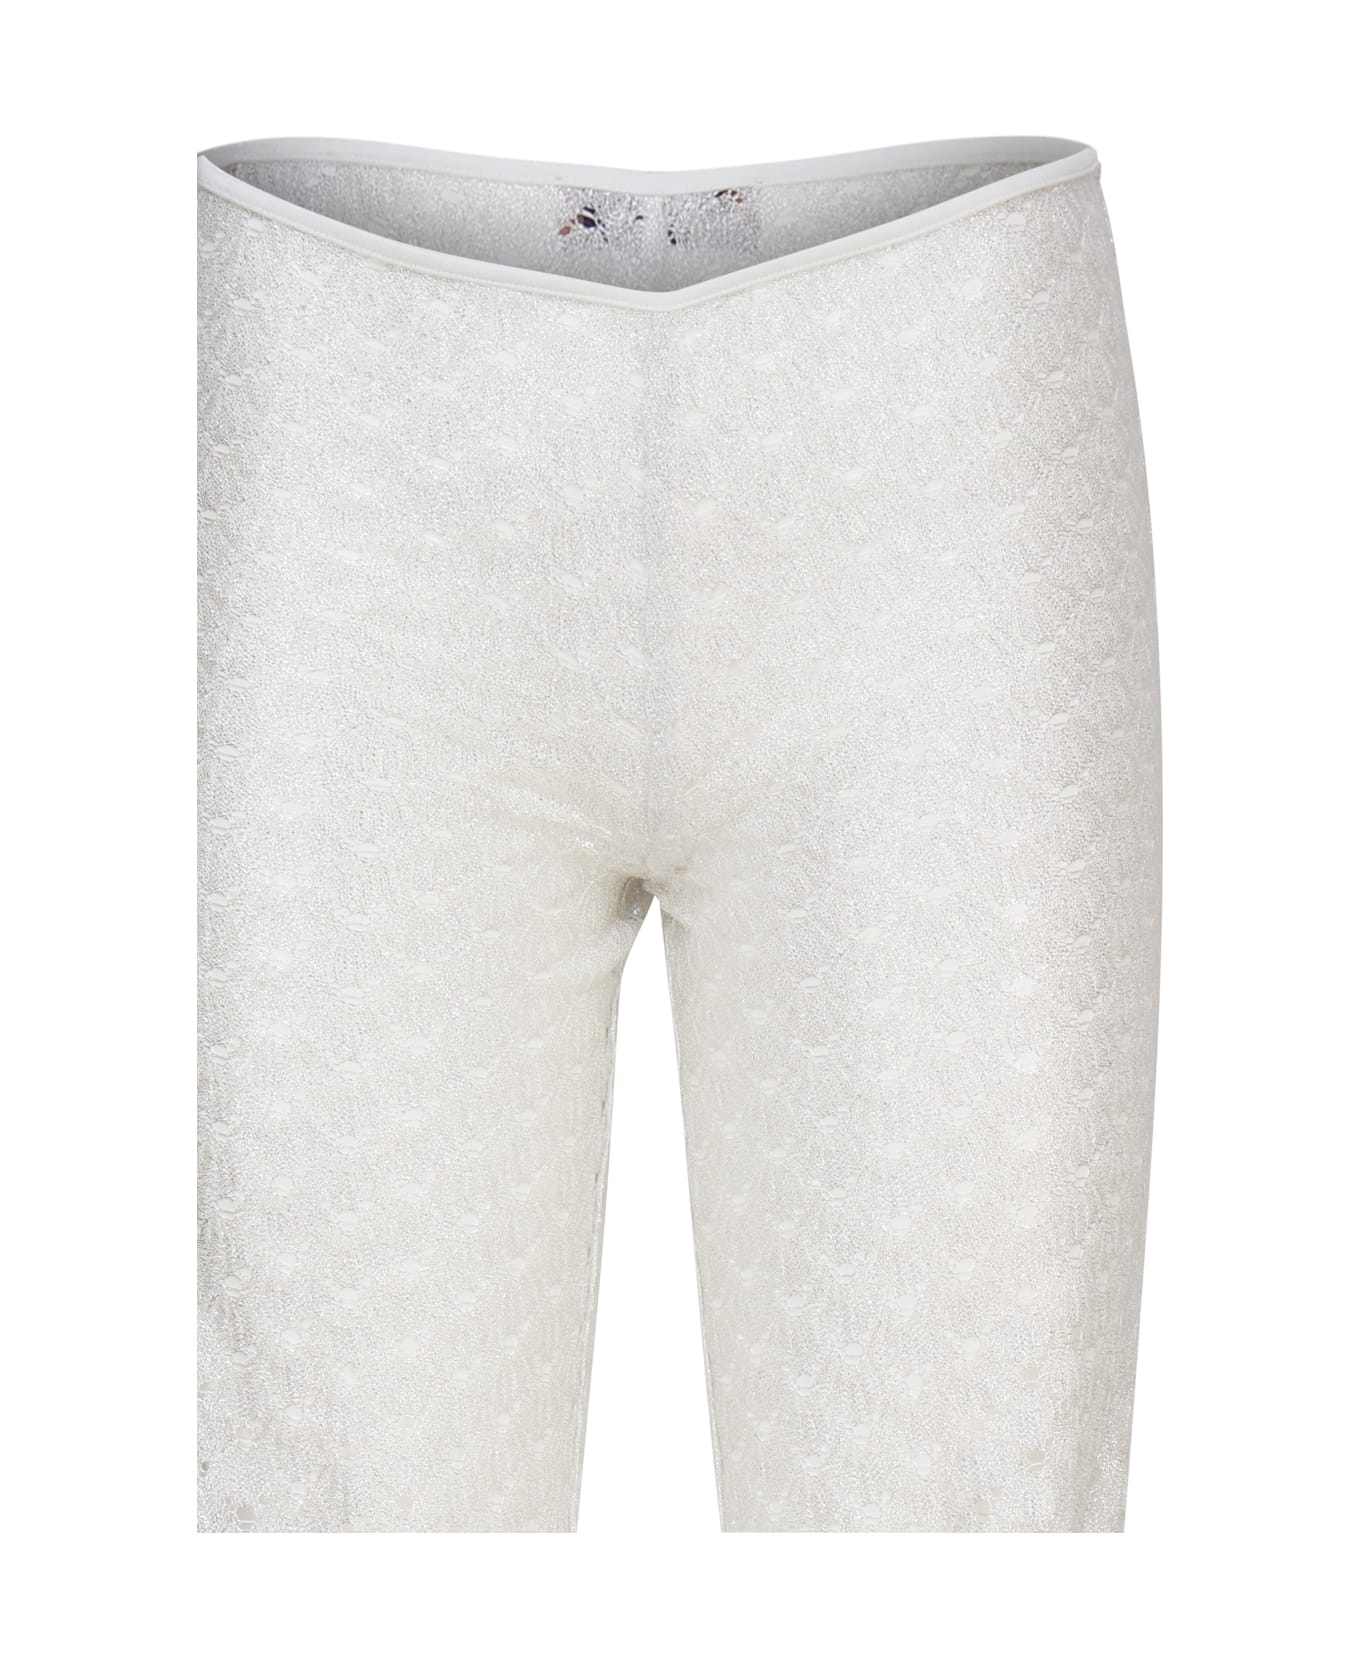 Missoni Flared Viscose Trousers - Brilliant white